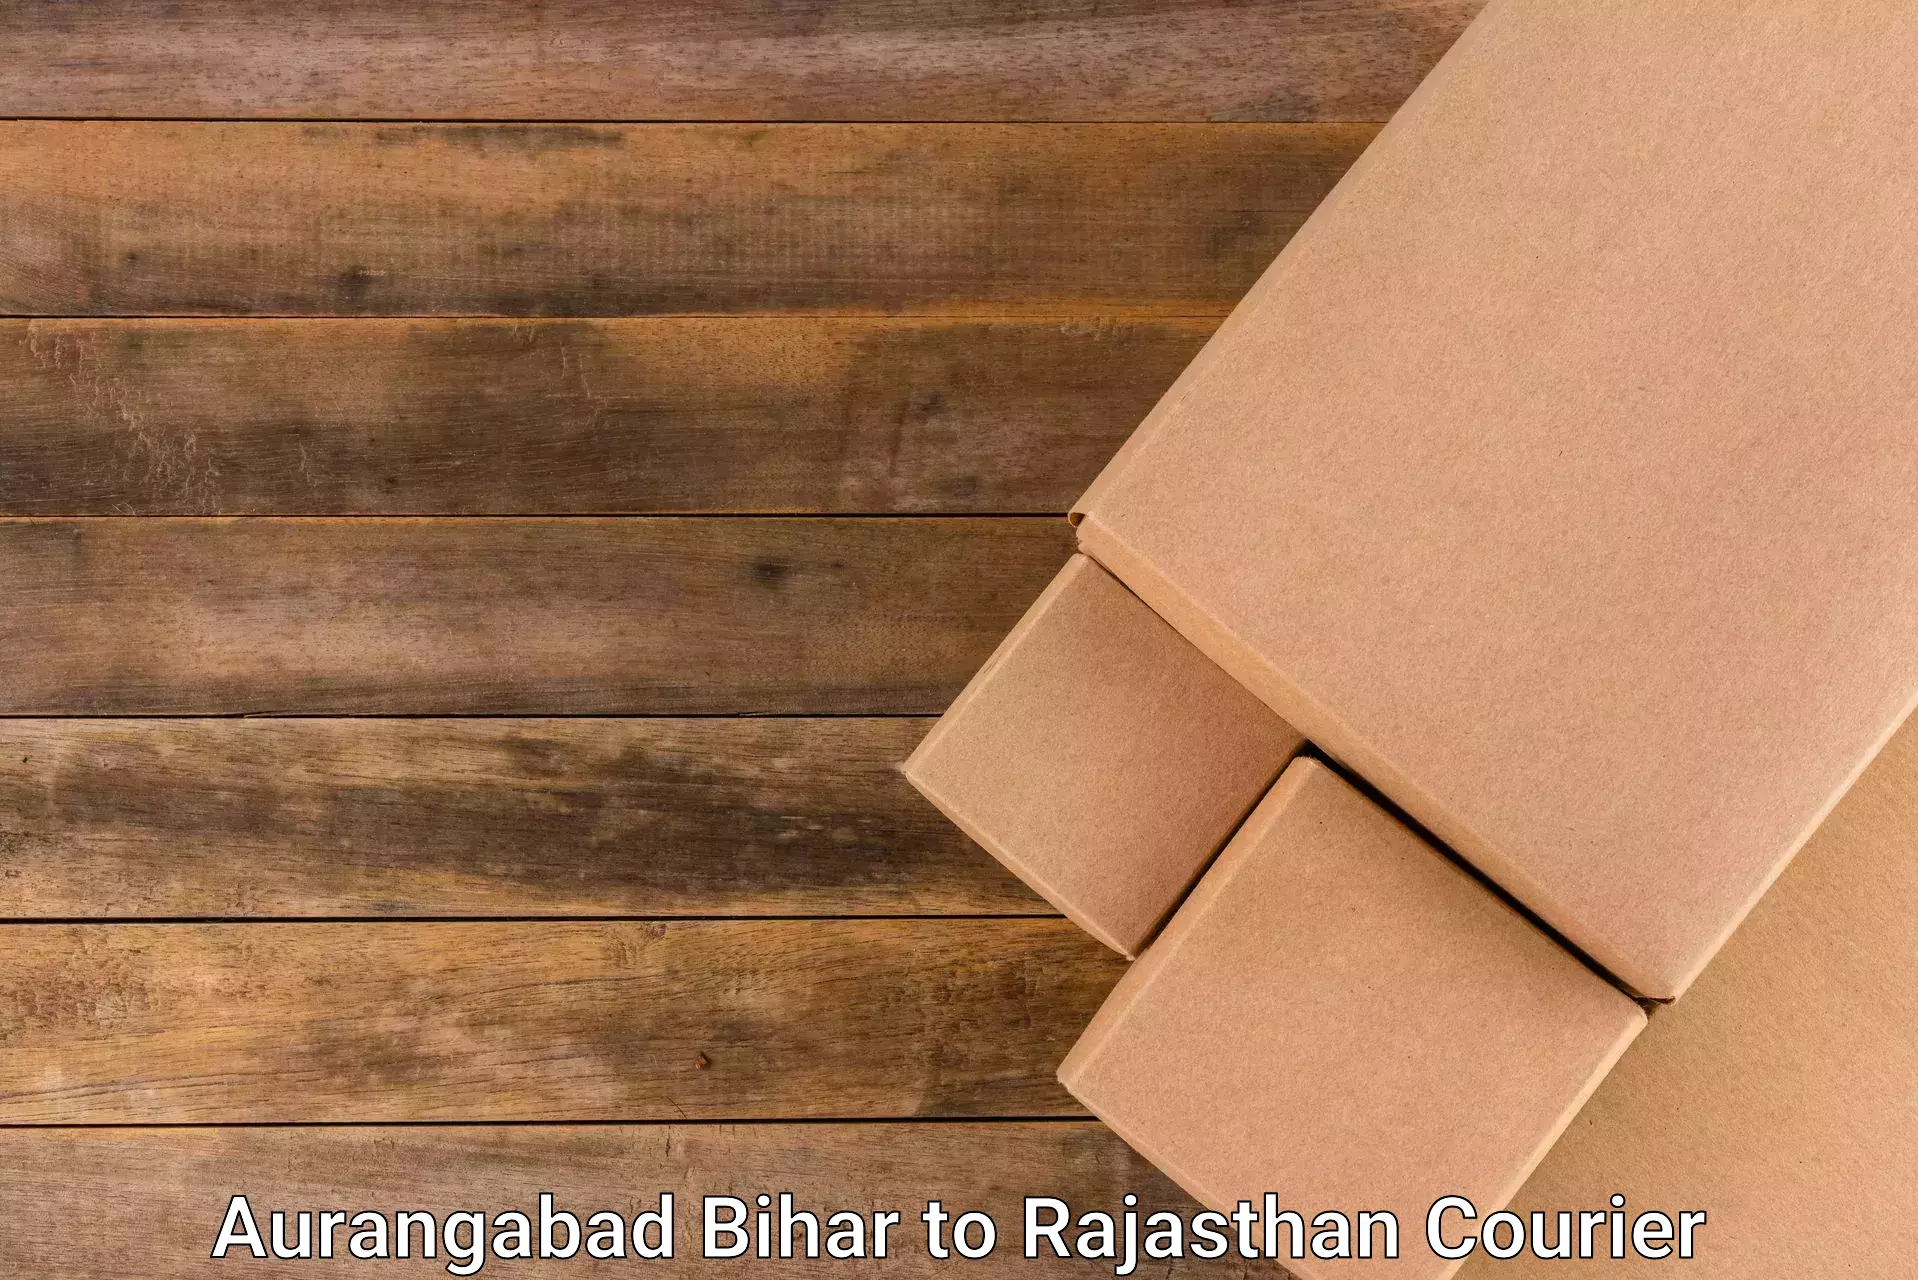 Express courier capabilities Aurangabad Bihar to Bikaner